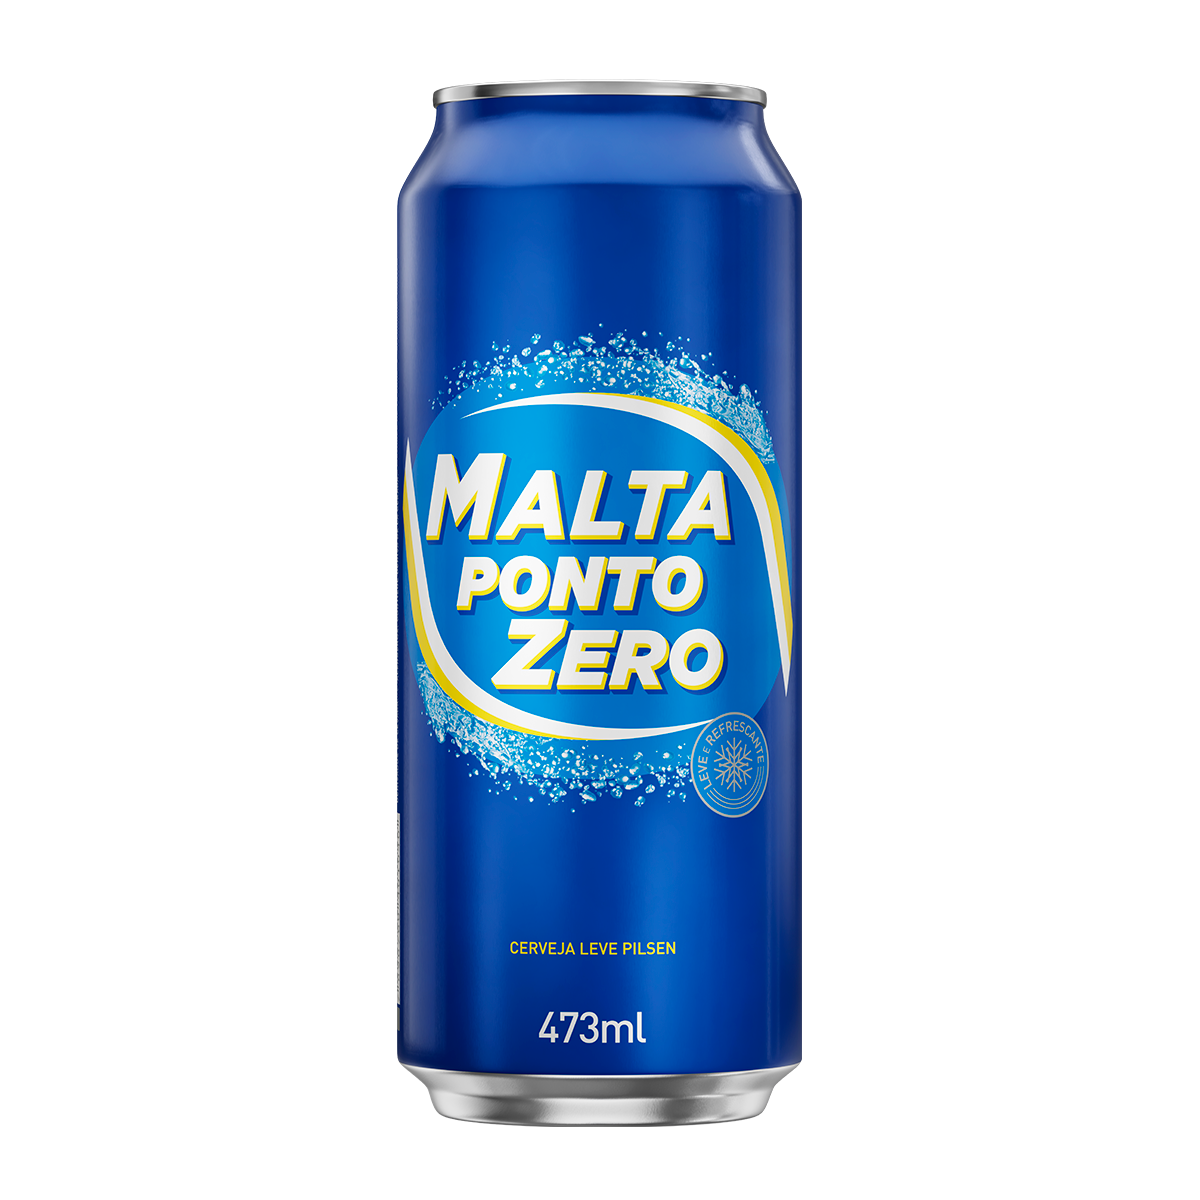 Malta Ponto Zero 473ml